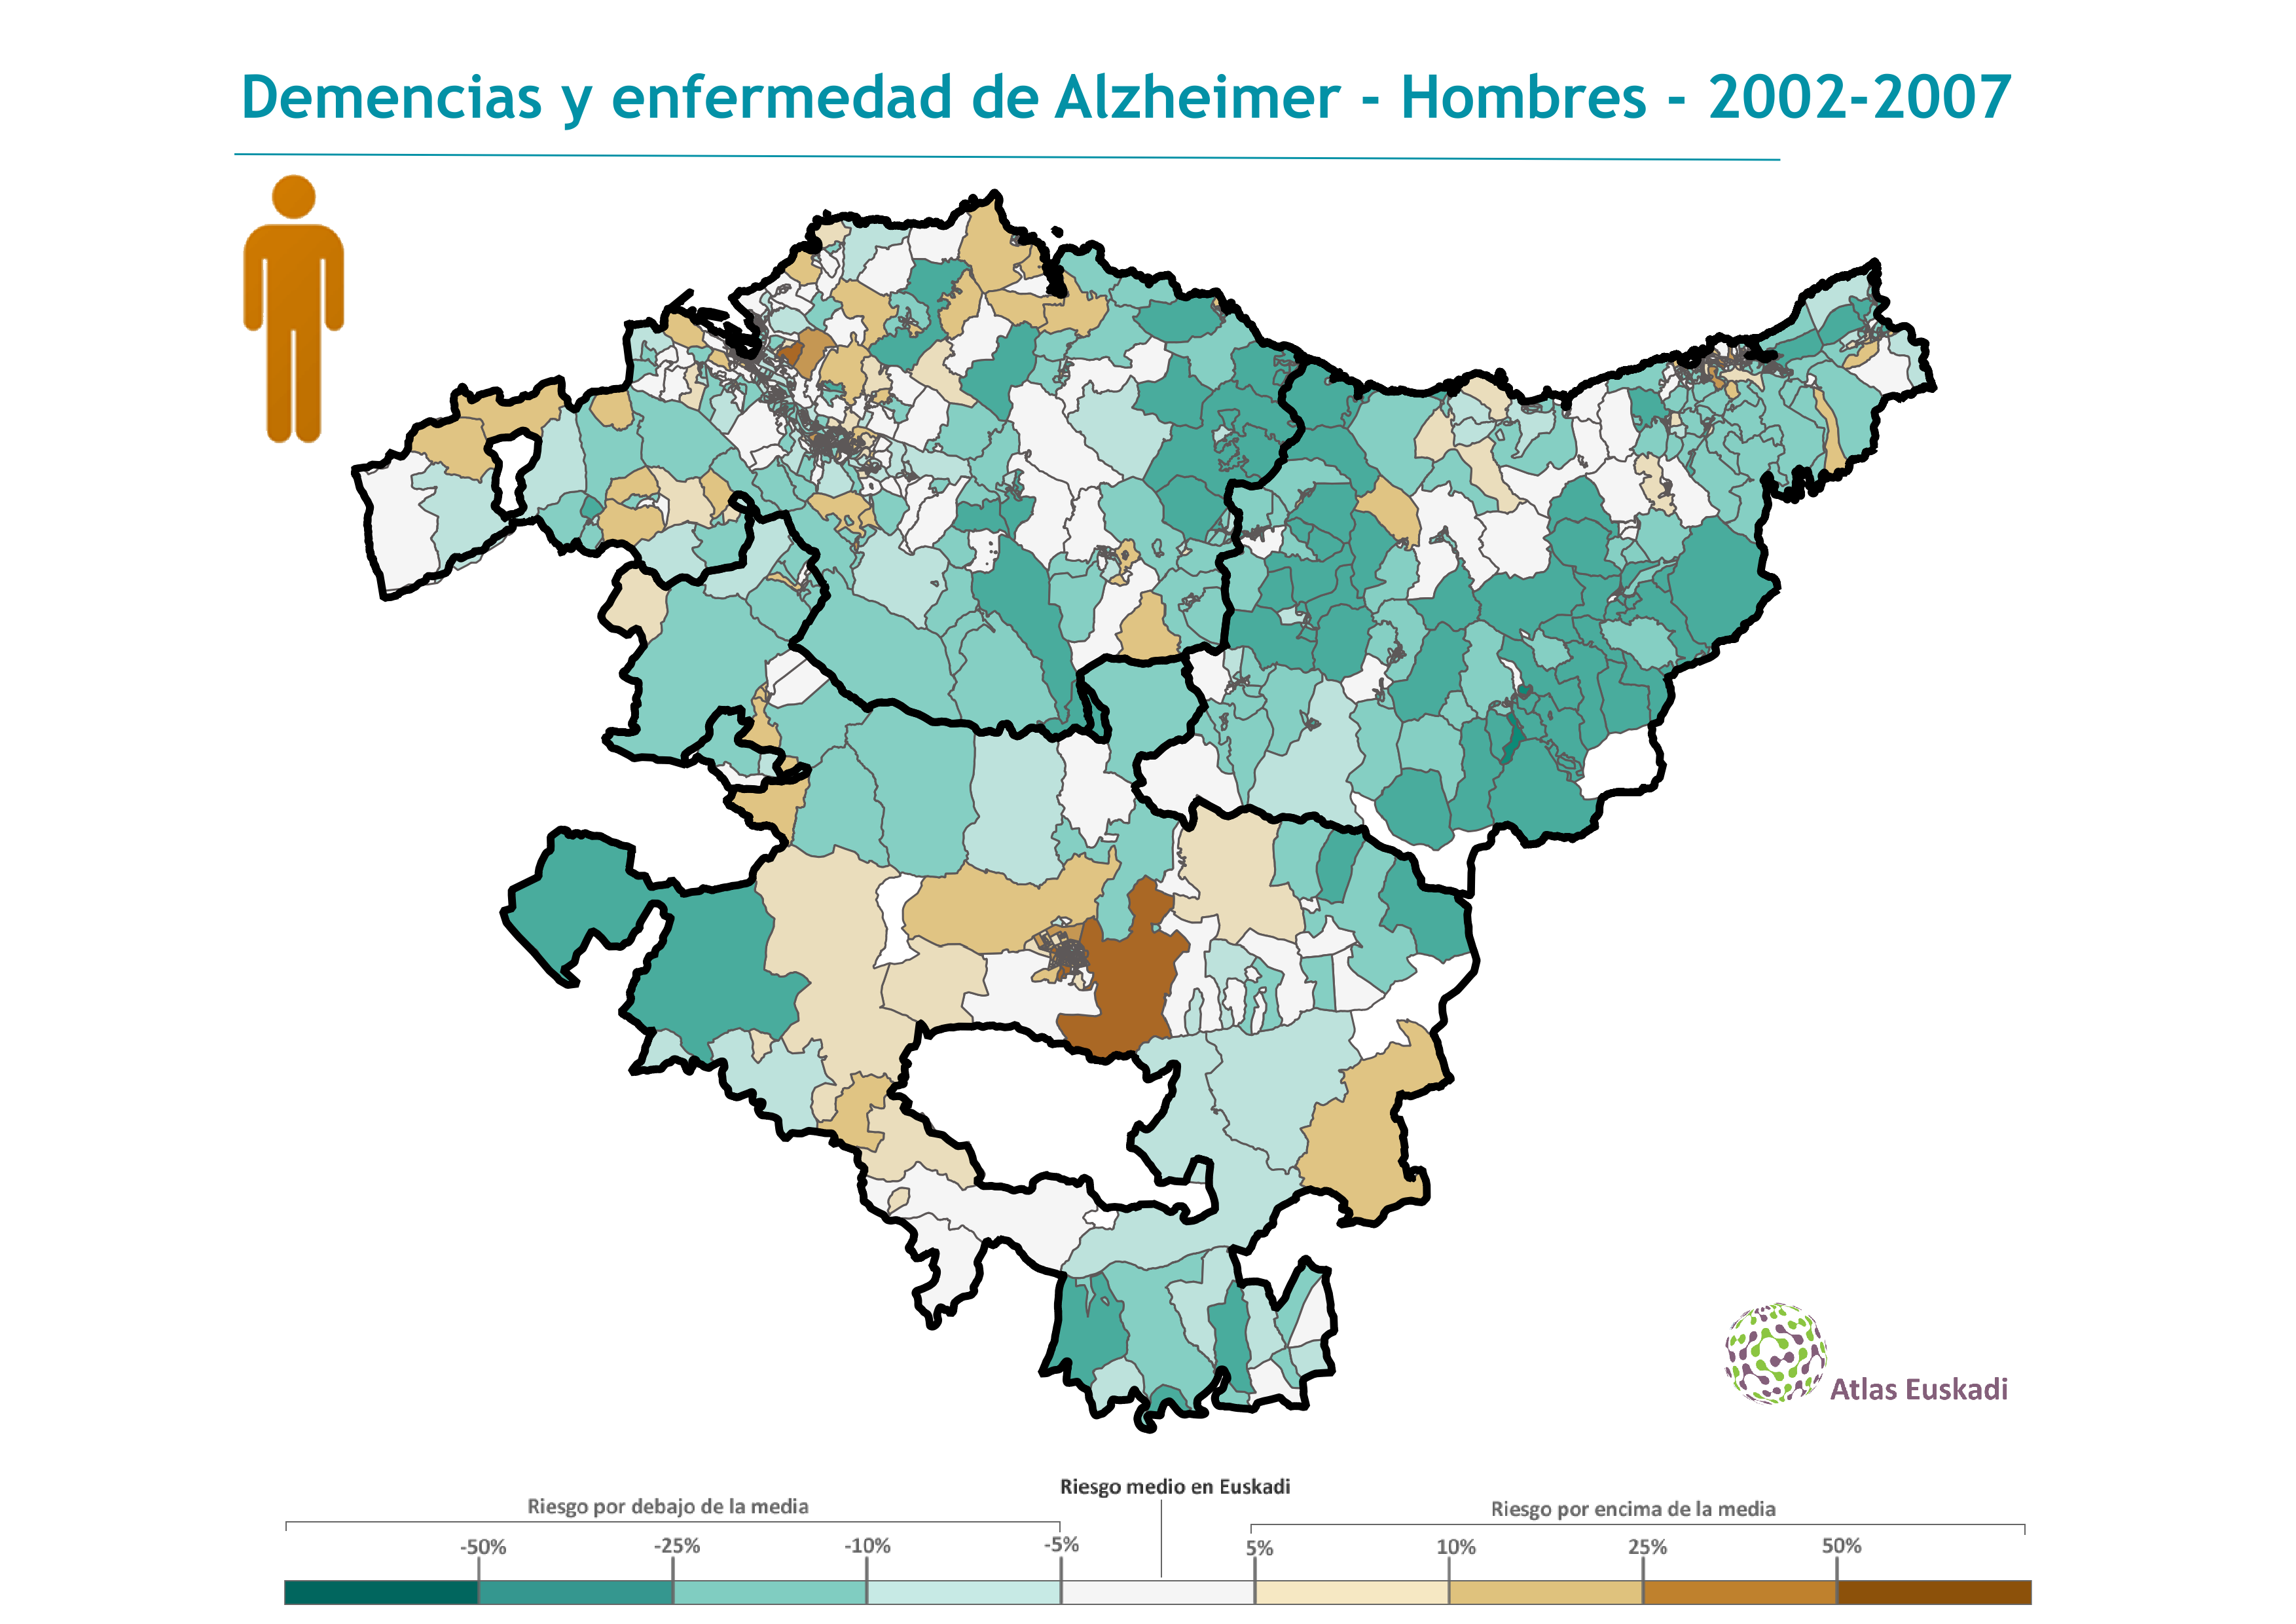 Demencias y enfermedad de Alzheimer hombres  2002-2007 Euskadi